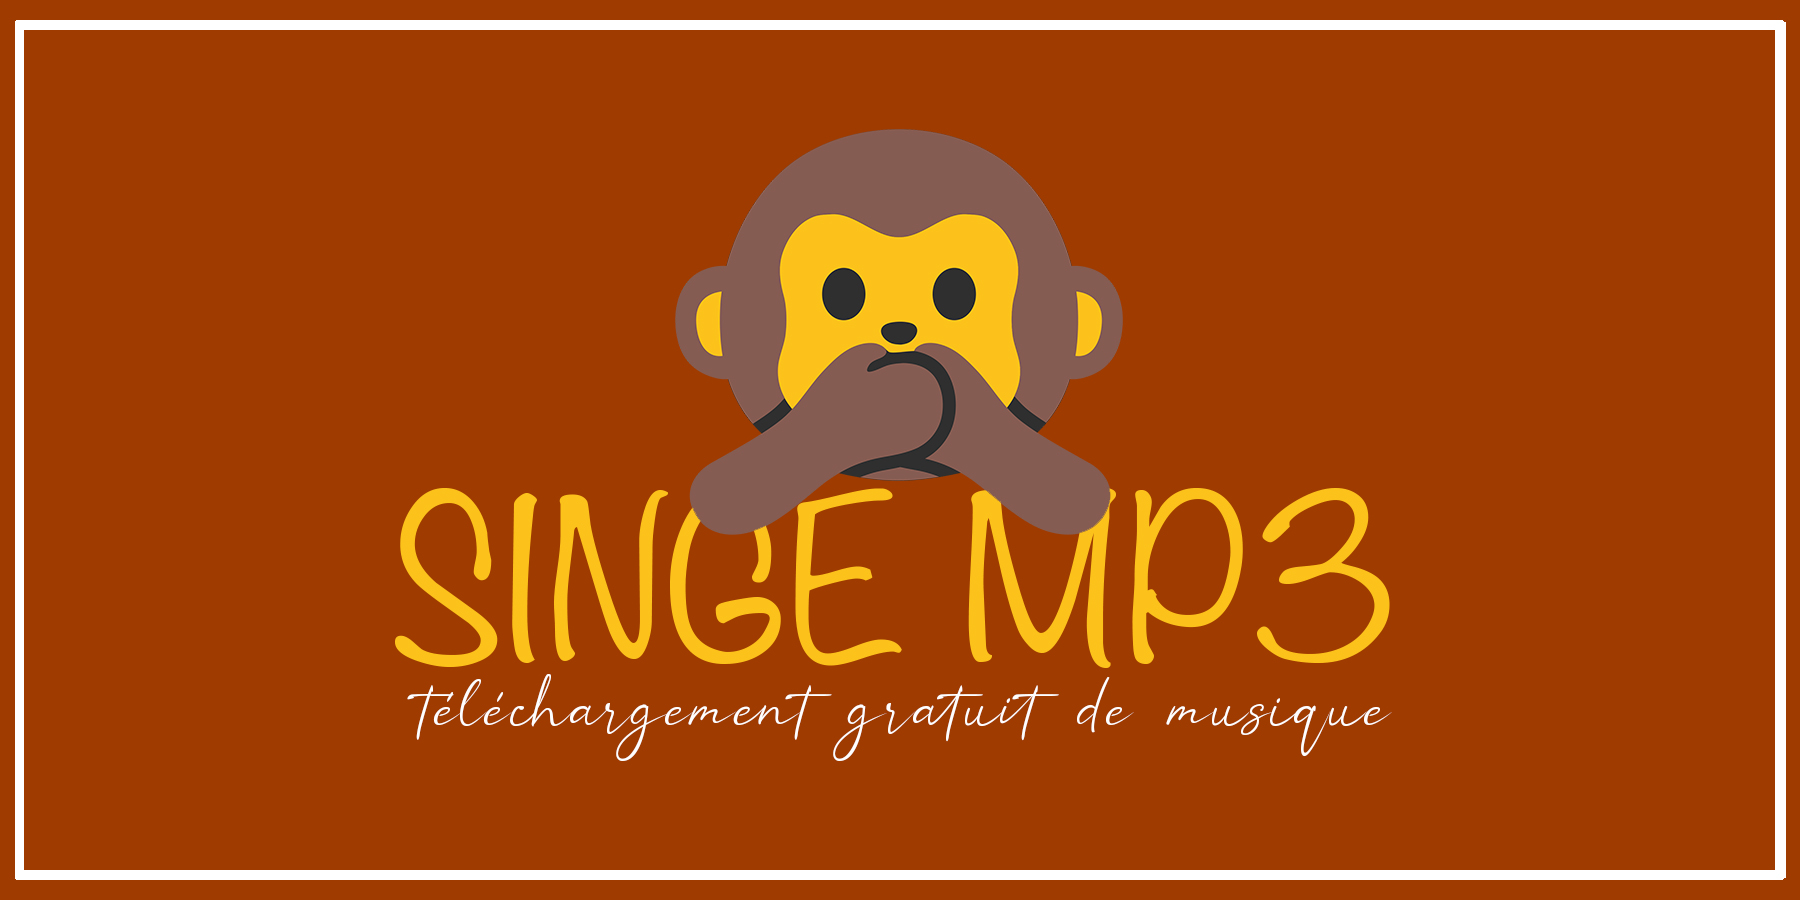 Monkey MP3: Adiresy vaovao hisintona mozika MP3 maimaimpoana